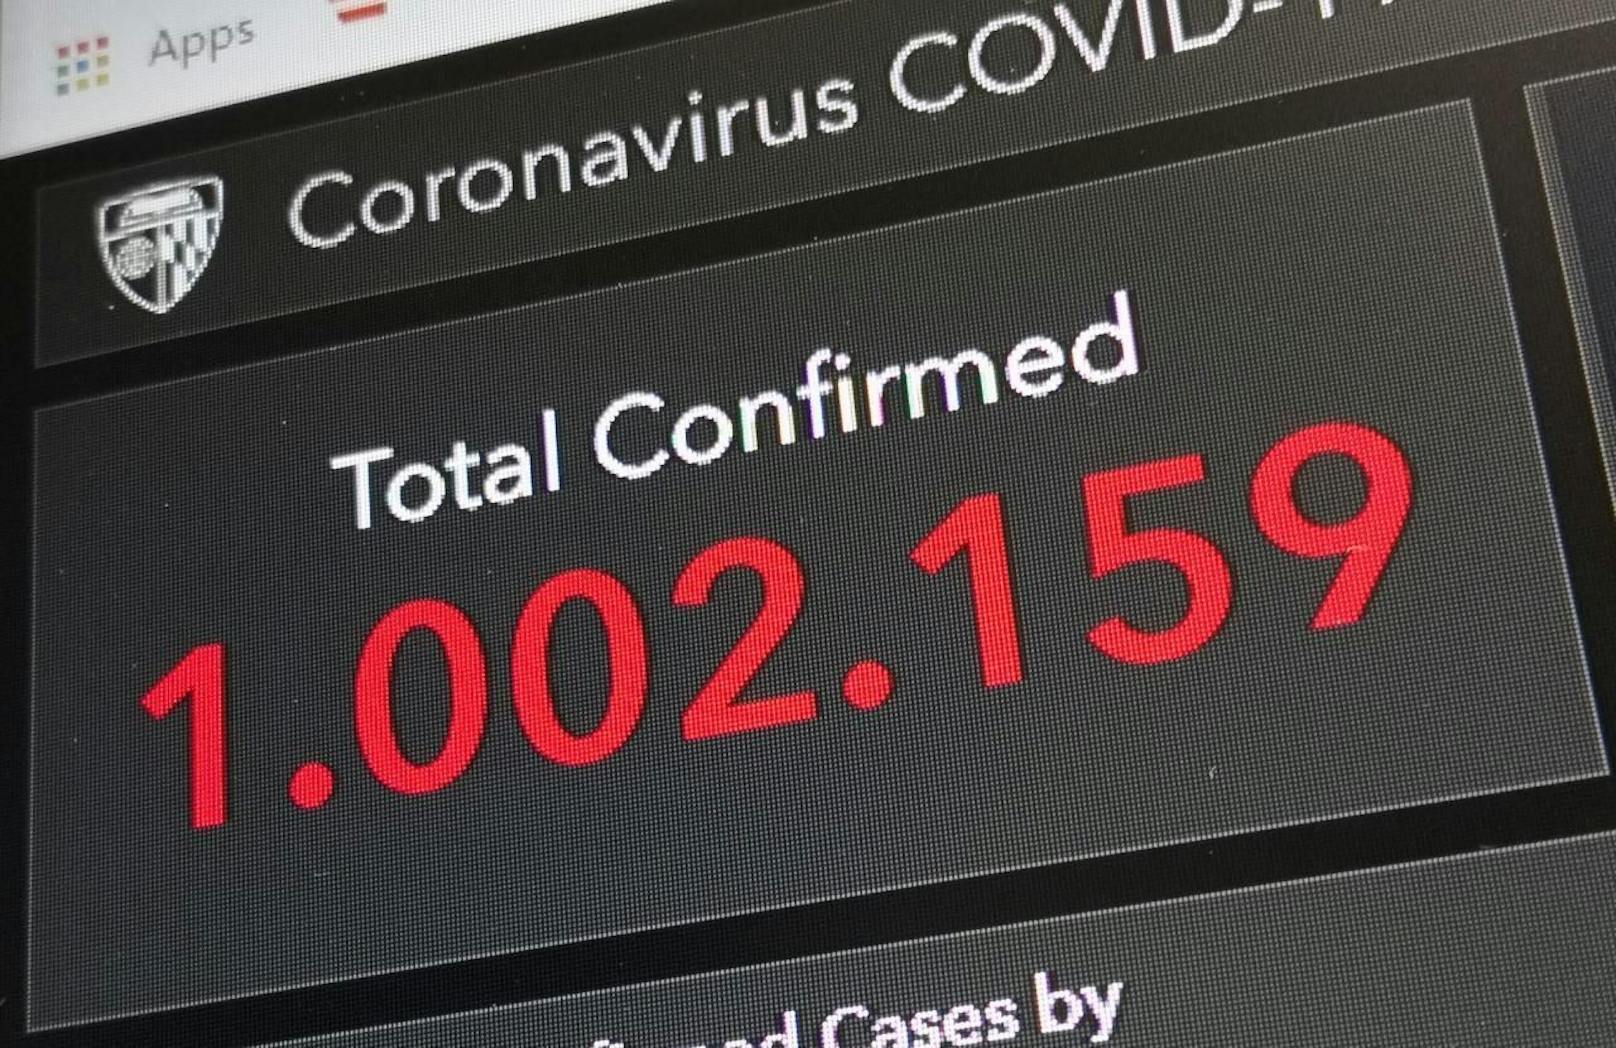 Am 2. April, um 21.14 Uhr nachts, meldet die Johns Hopkins Universität weltweit über eine Million bestätigte Corona-Fälle.